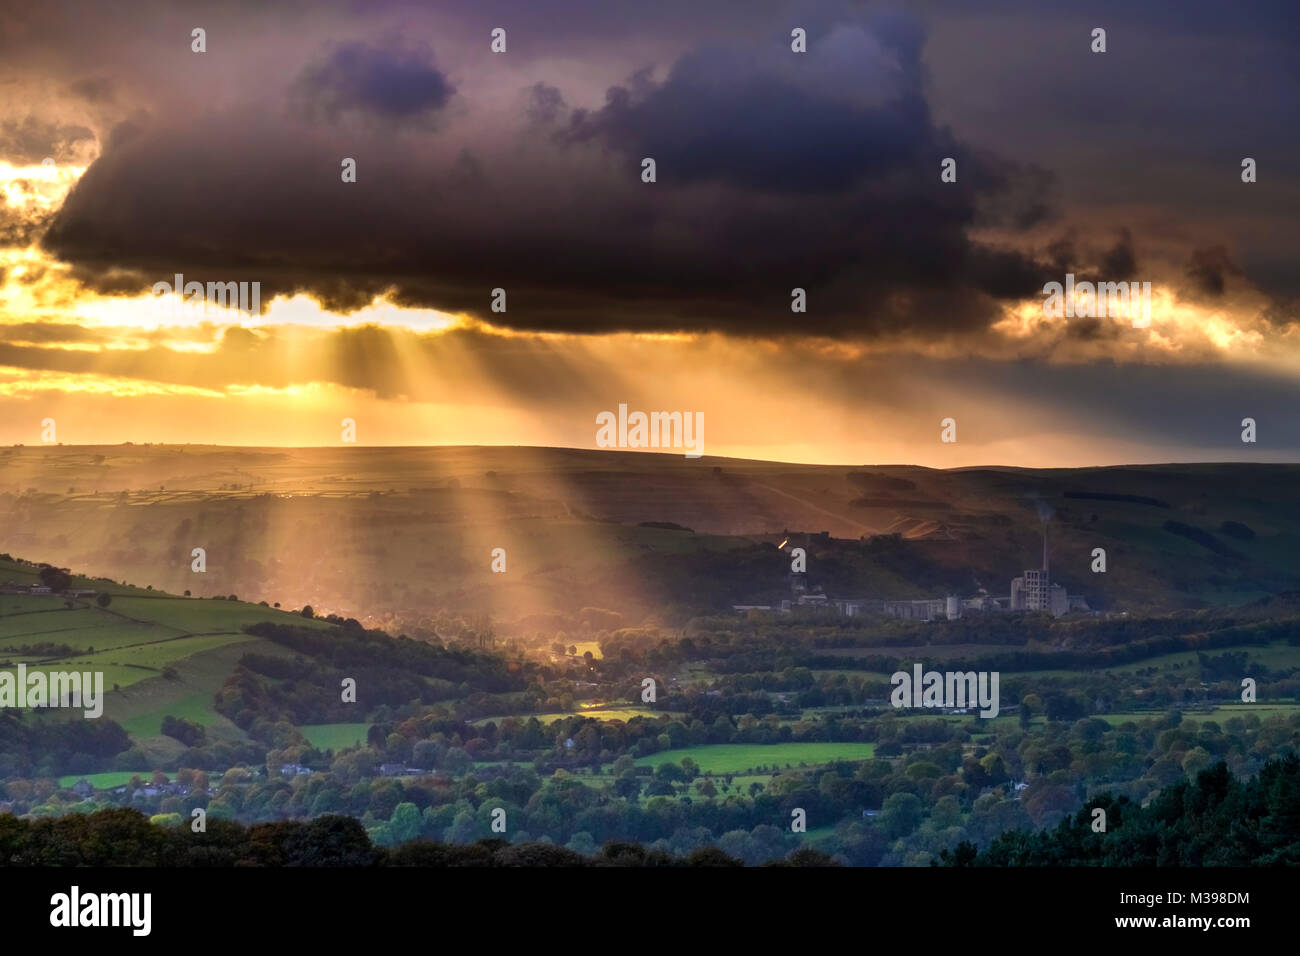 Rayons crépusculaires sur l'espoir Valley, parc national de Peak District, Derbyshire, Angleterre, RU Banque D'Images